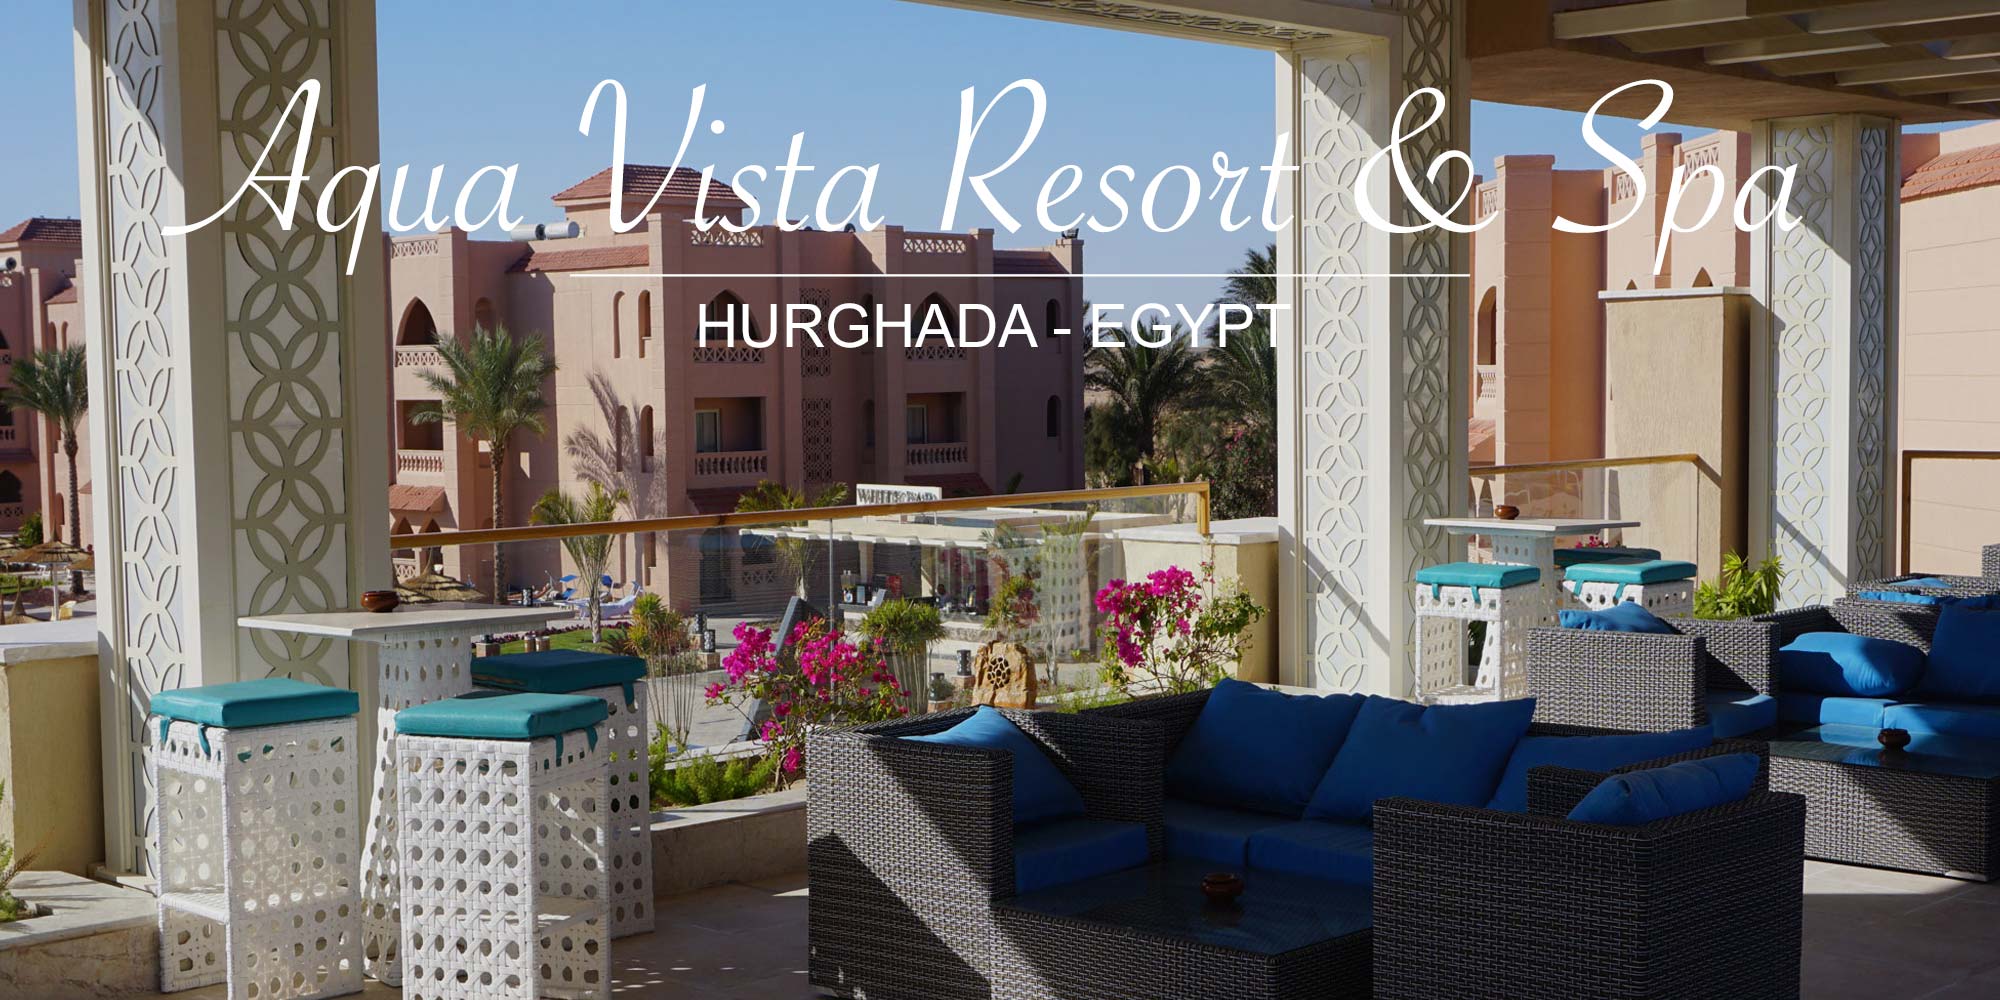 aqua vista resort hurghada